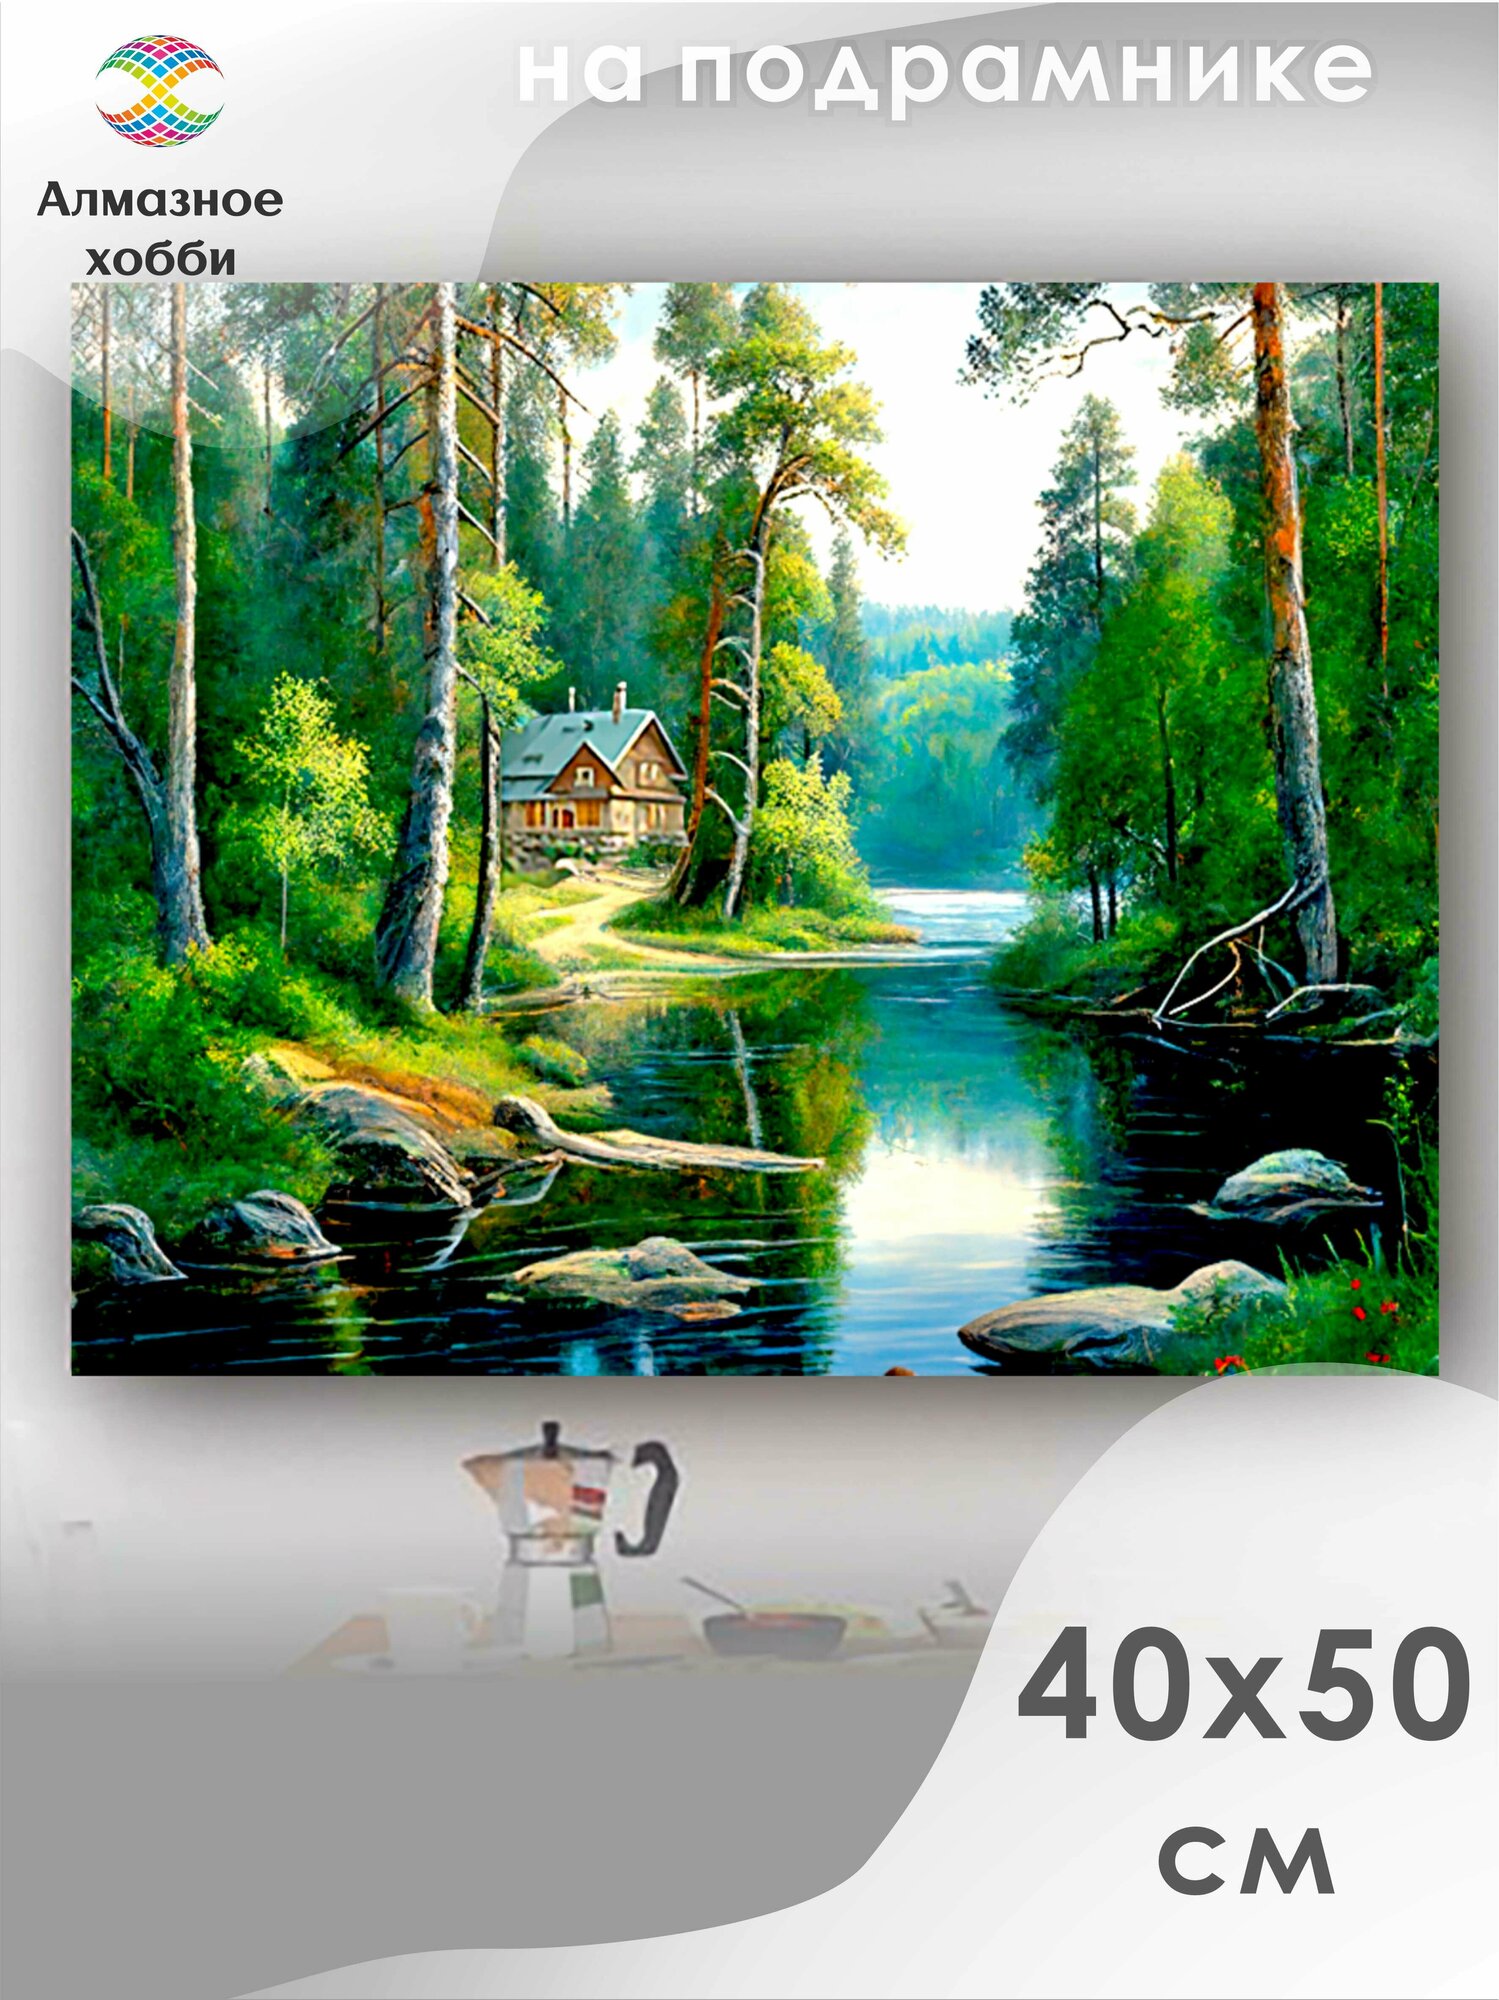 Алмазная мозаика на подрамнике Картина стразами Алмазное хобби "Лето в лесу" 40х50